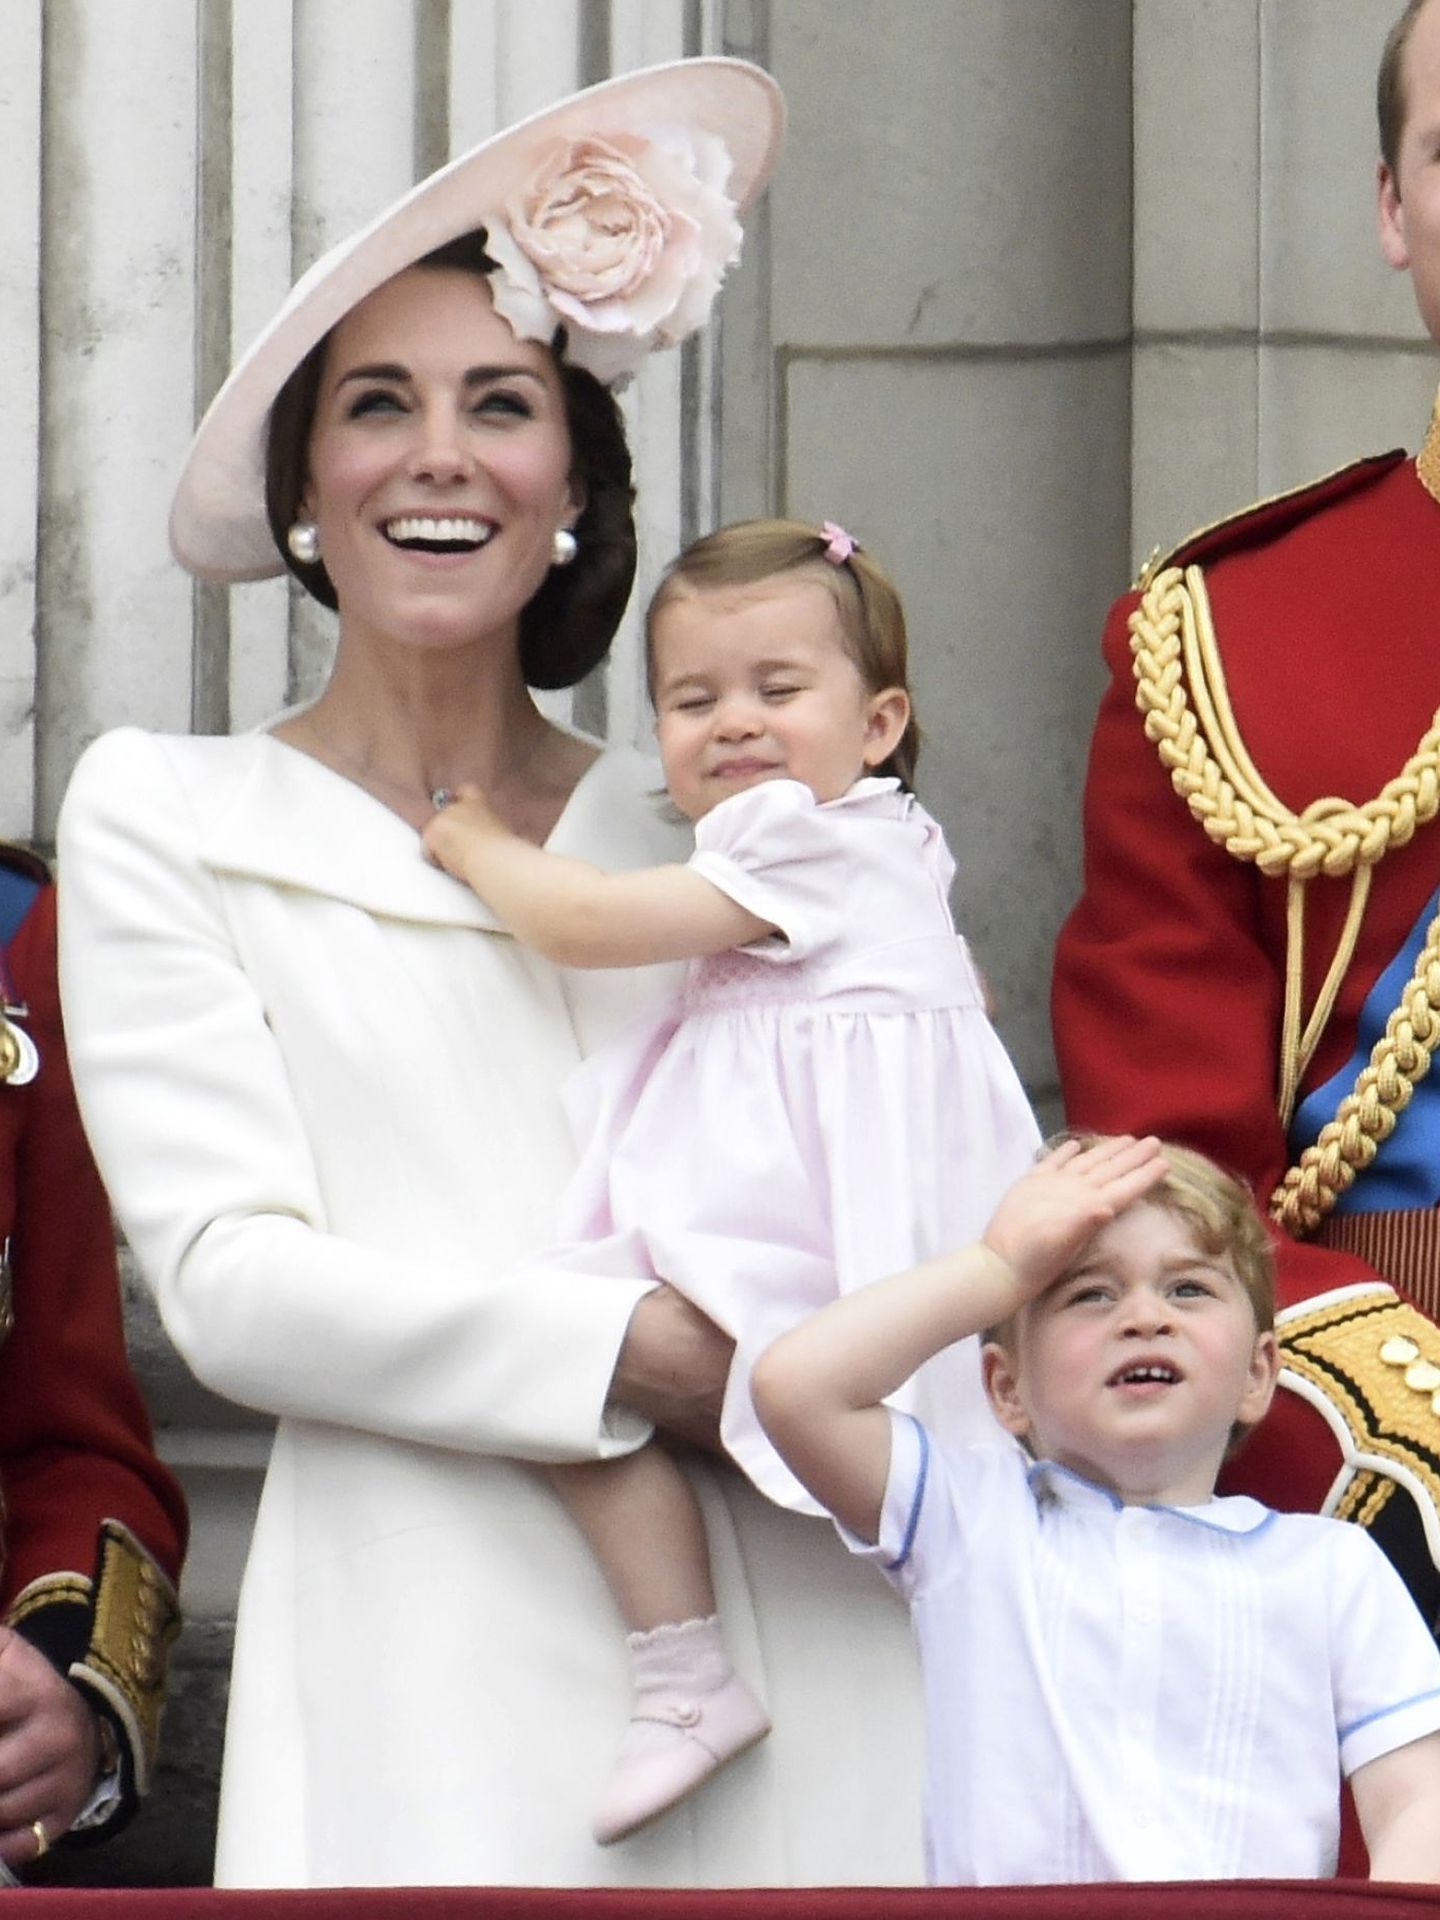 La entonces duquesa de Cambridge, con su hija Charlotte en brazos en 2016. (Reuters/Toby Melville)